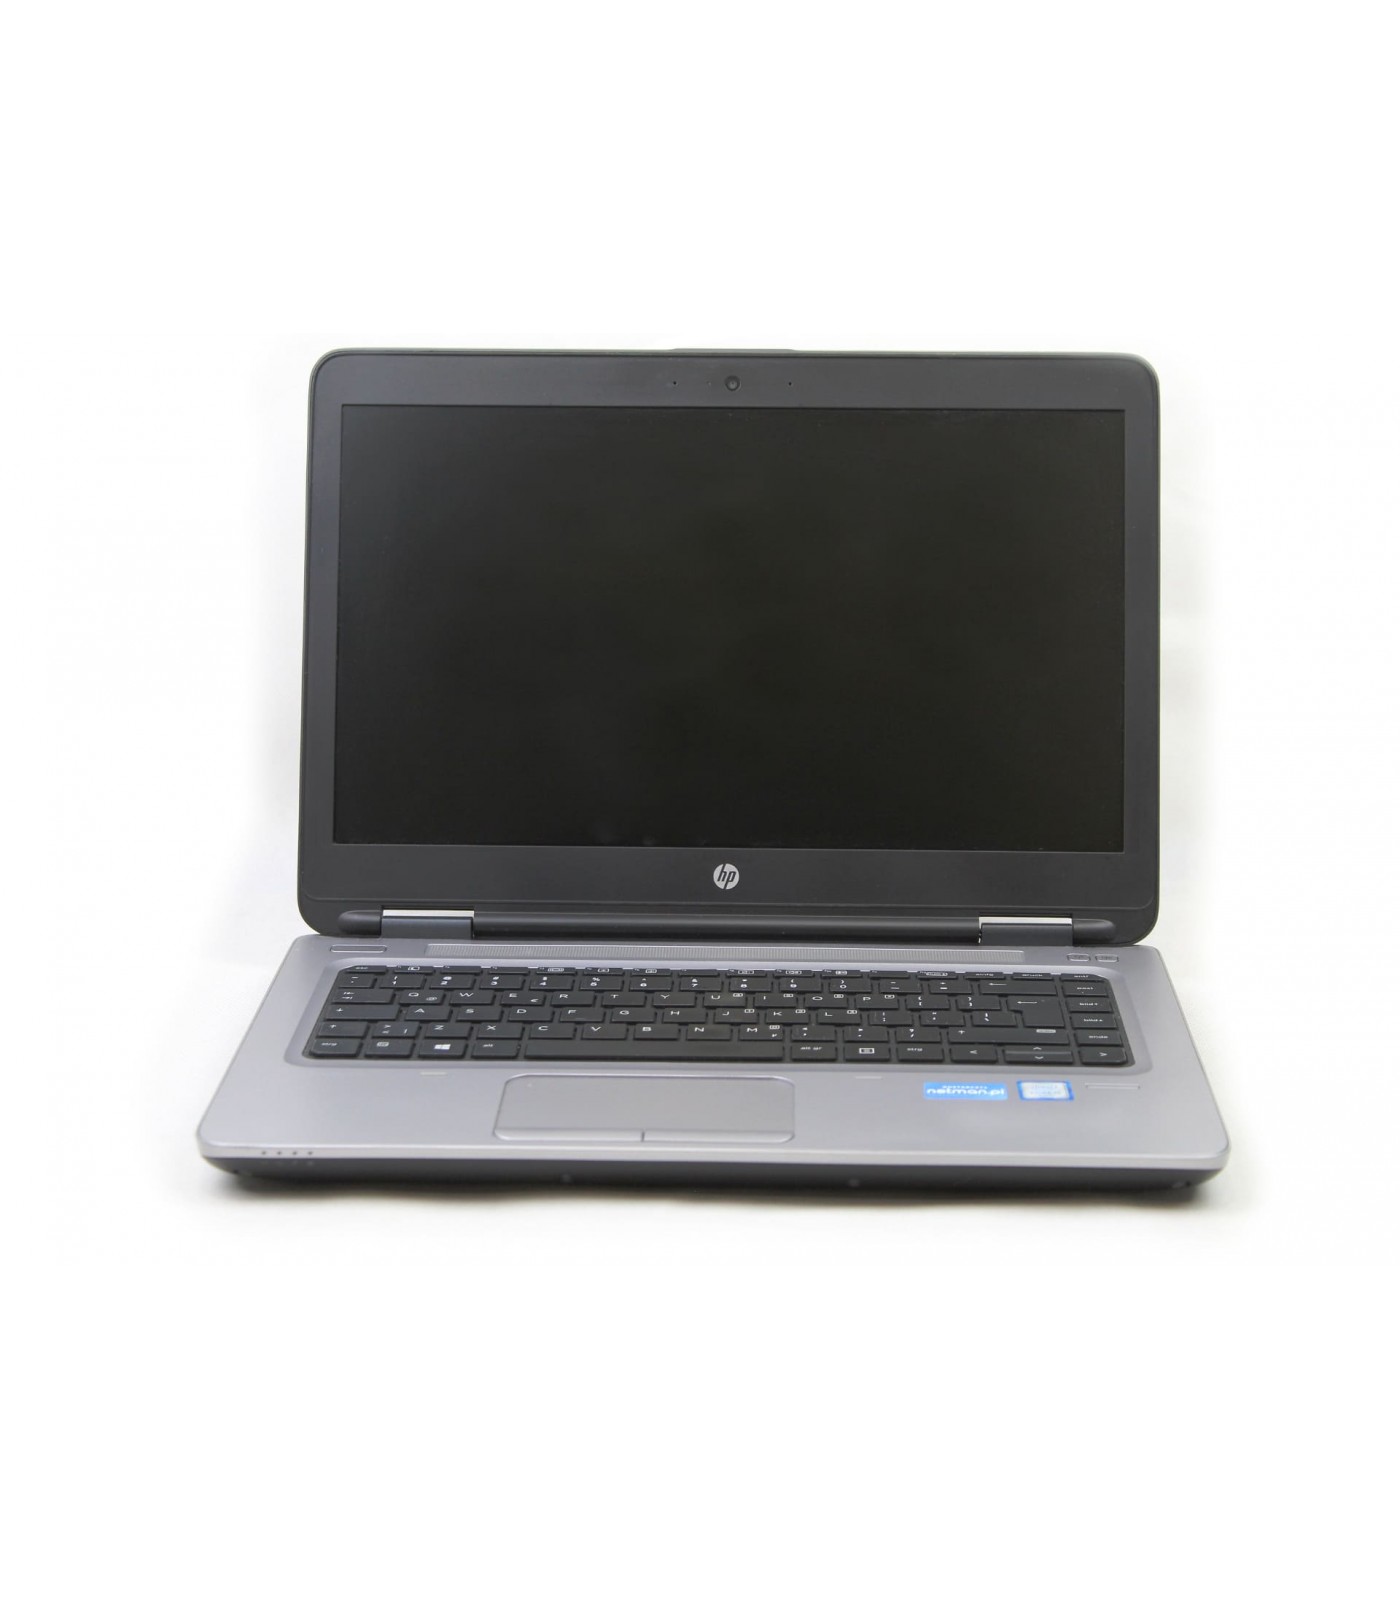 Poleasingowy HP Probook 640 G2 z procesorem i5-6300U w klasie A+